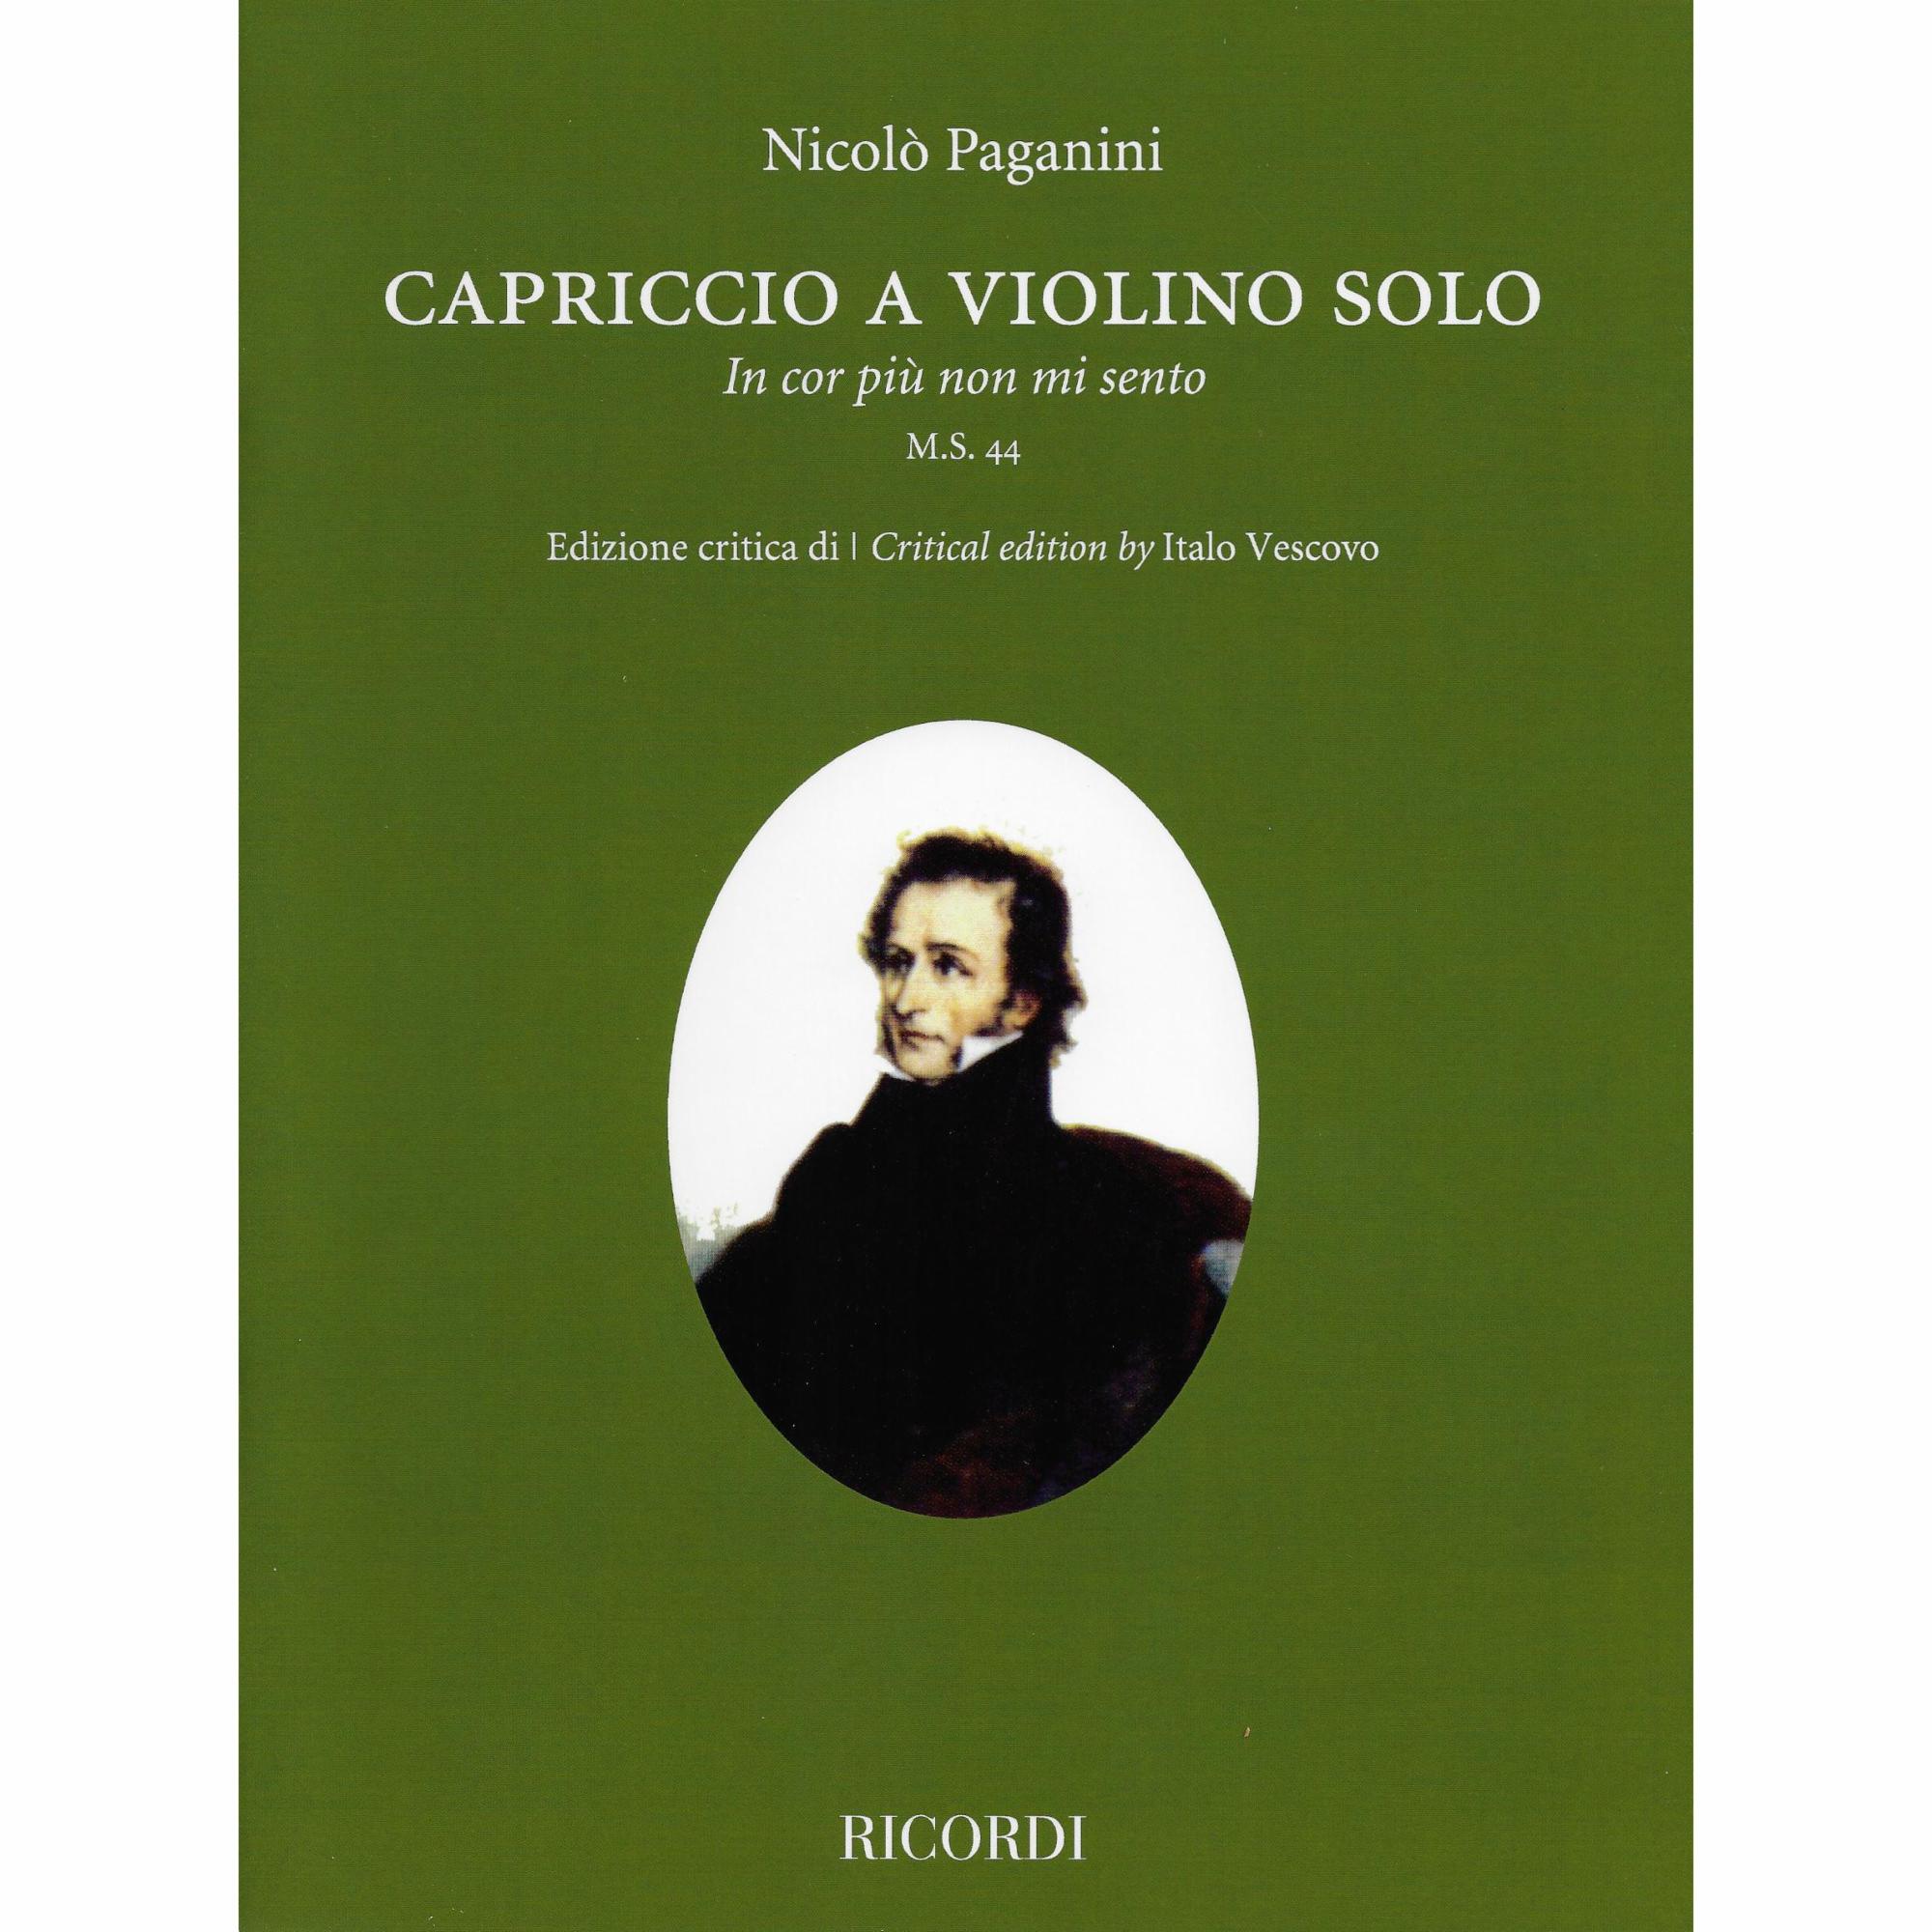 Paganini -- Capriccio (In cor piu non mi sento) M.S. 44 for Solo Violin